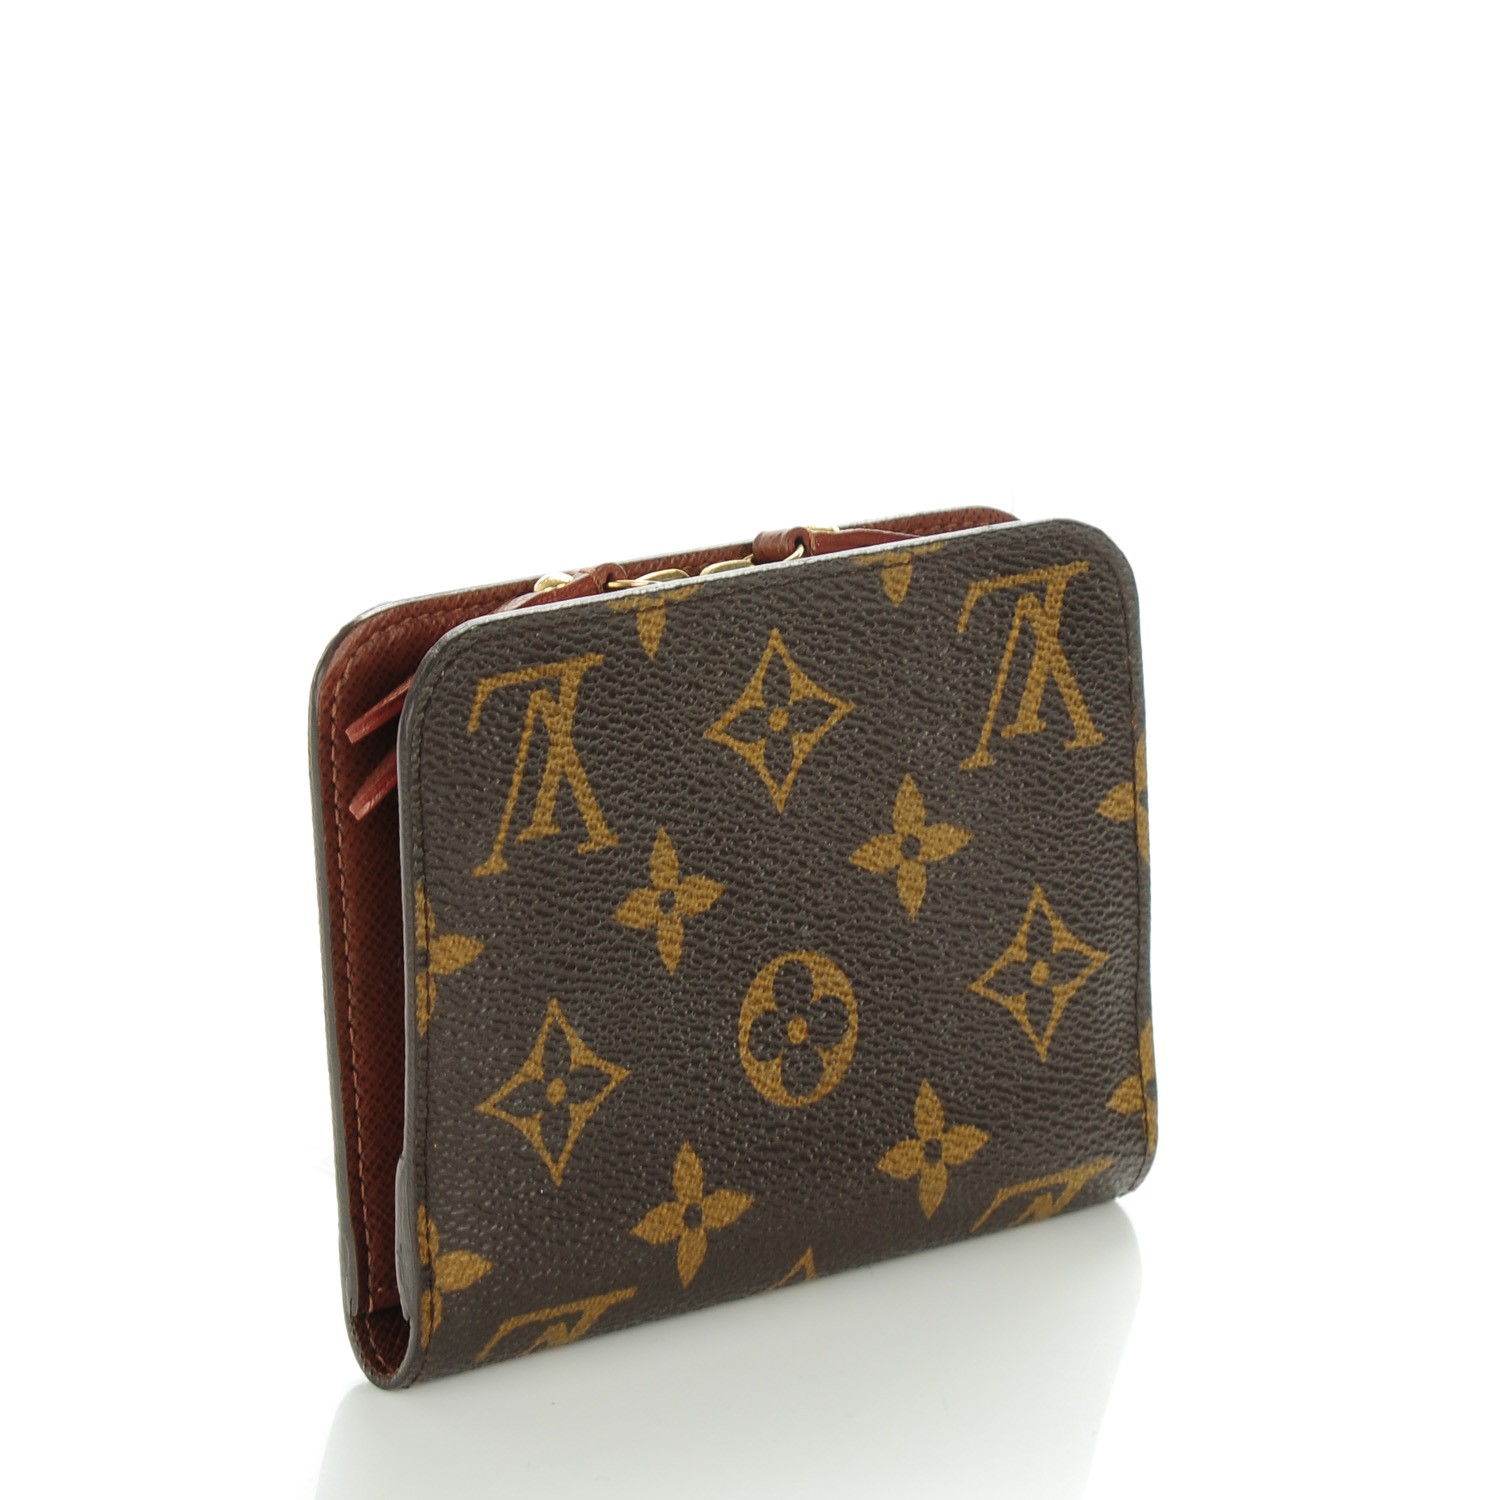 Louis Vuitton, Bags, Authentic Louis Vuitton Vernis Ludlow Wallet